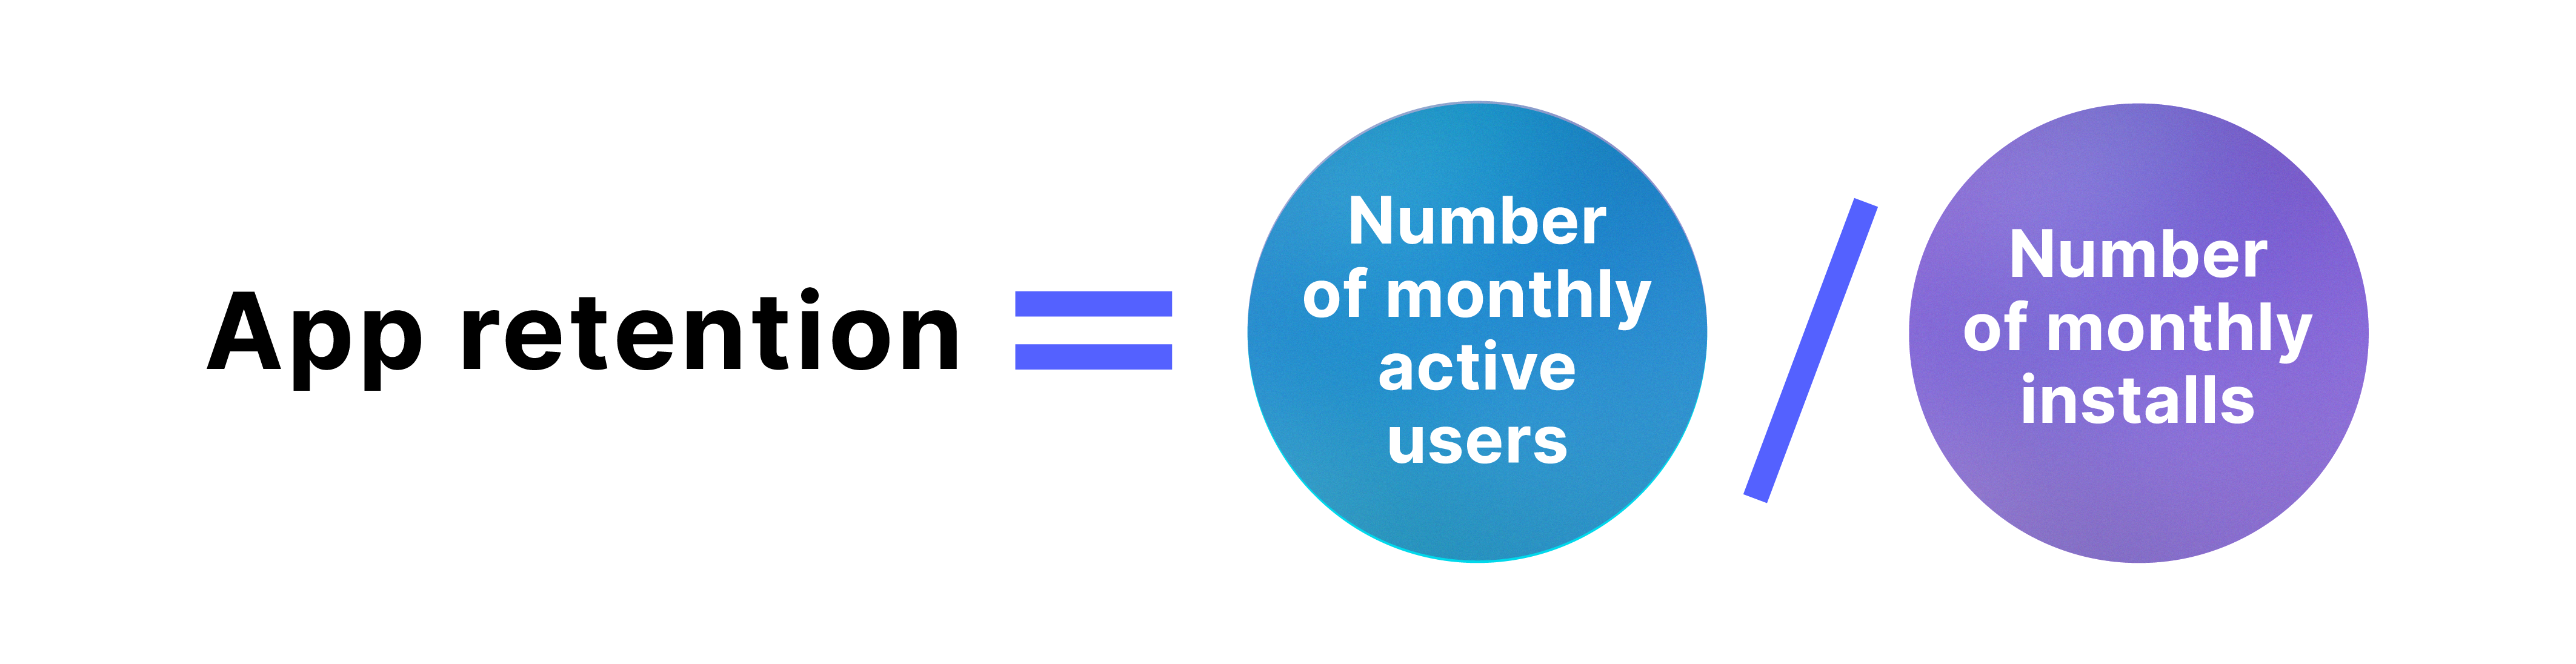 應用留存 = 每月活躍用戶數量 / 每月安裝數量